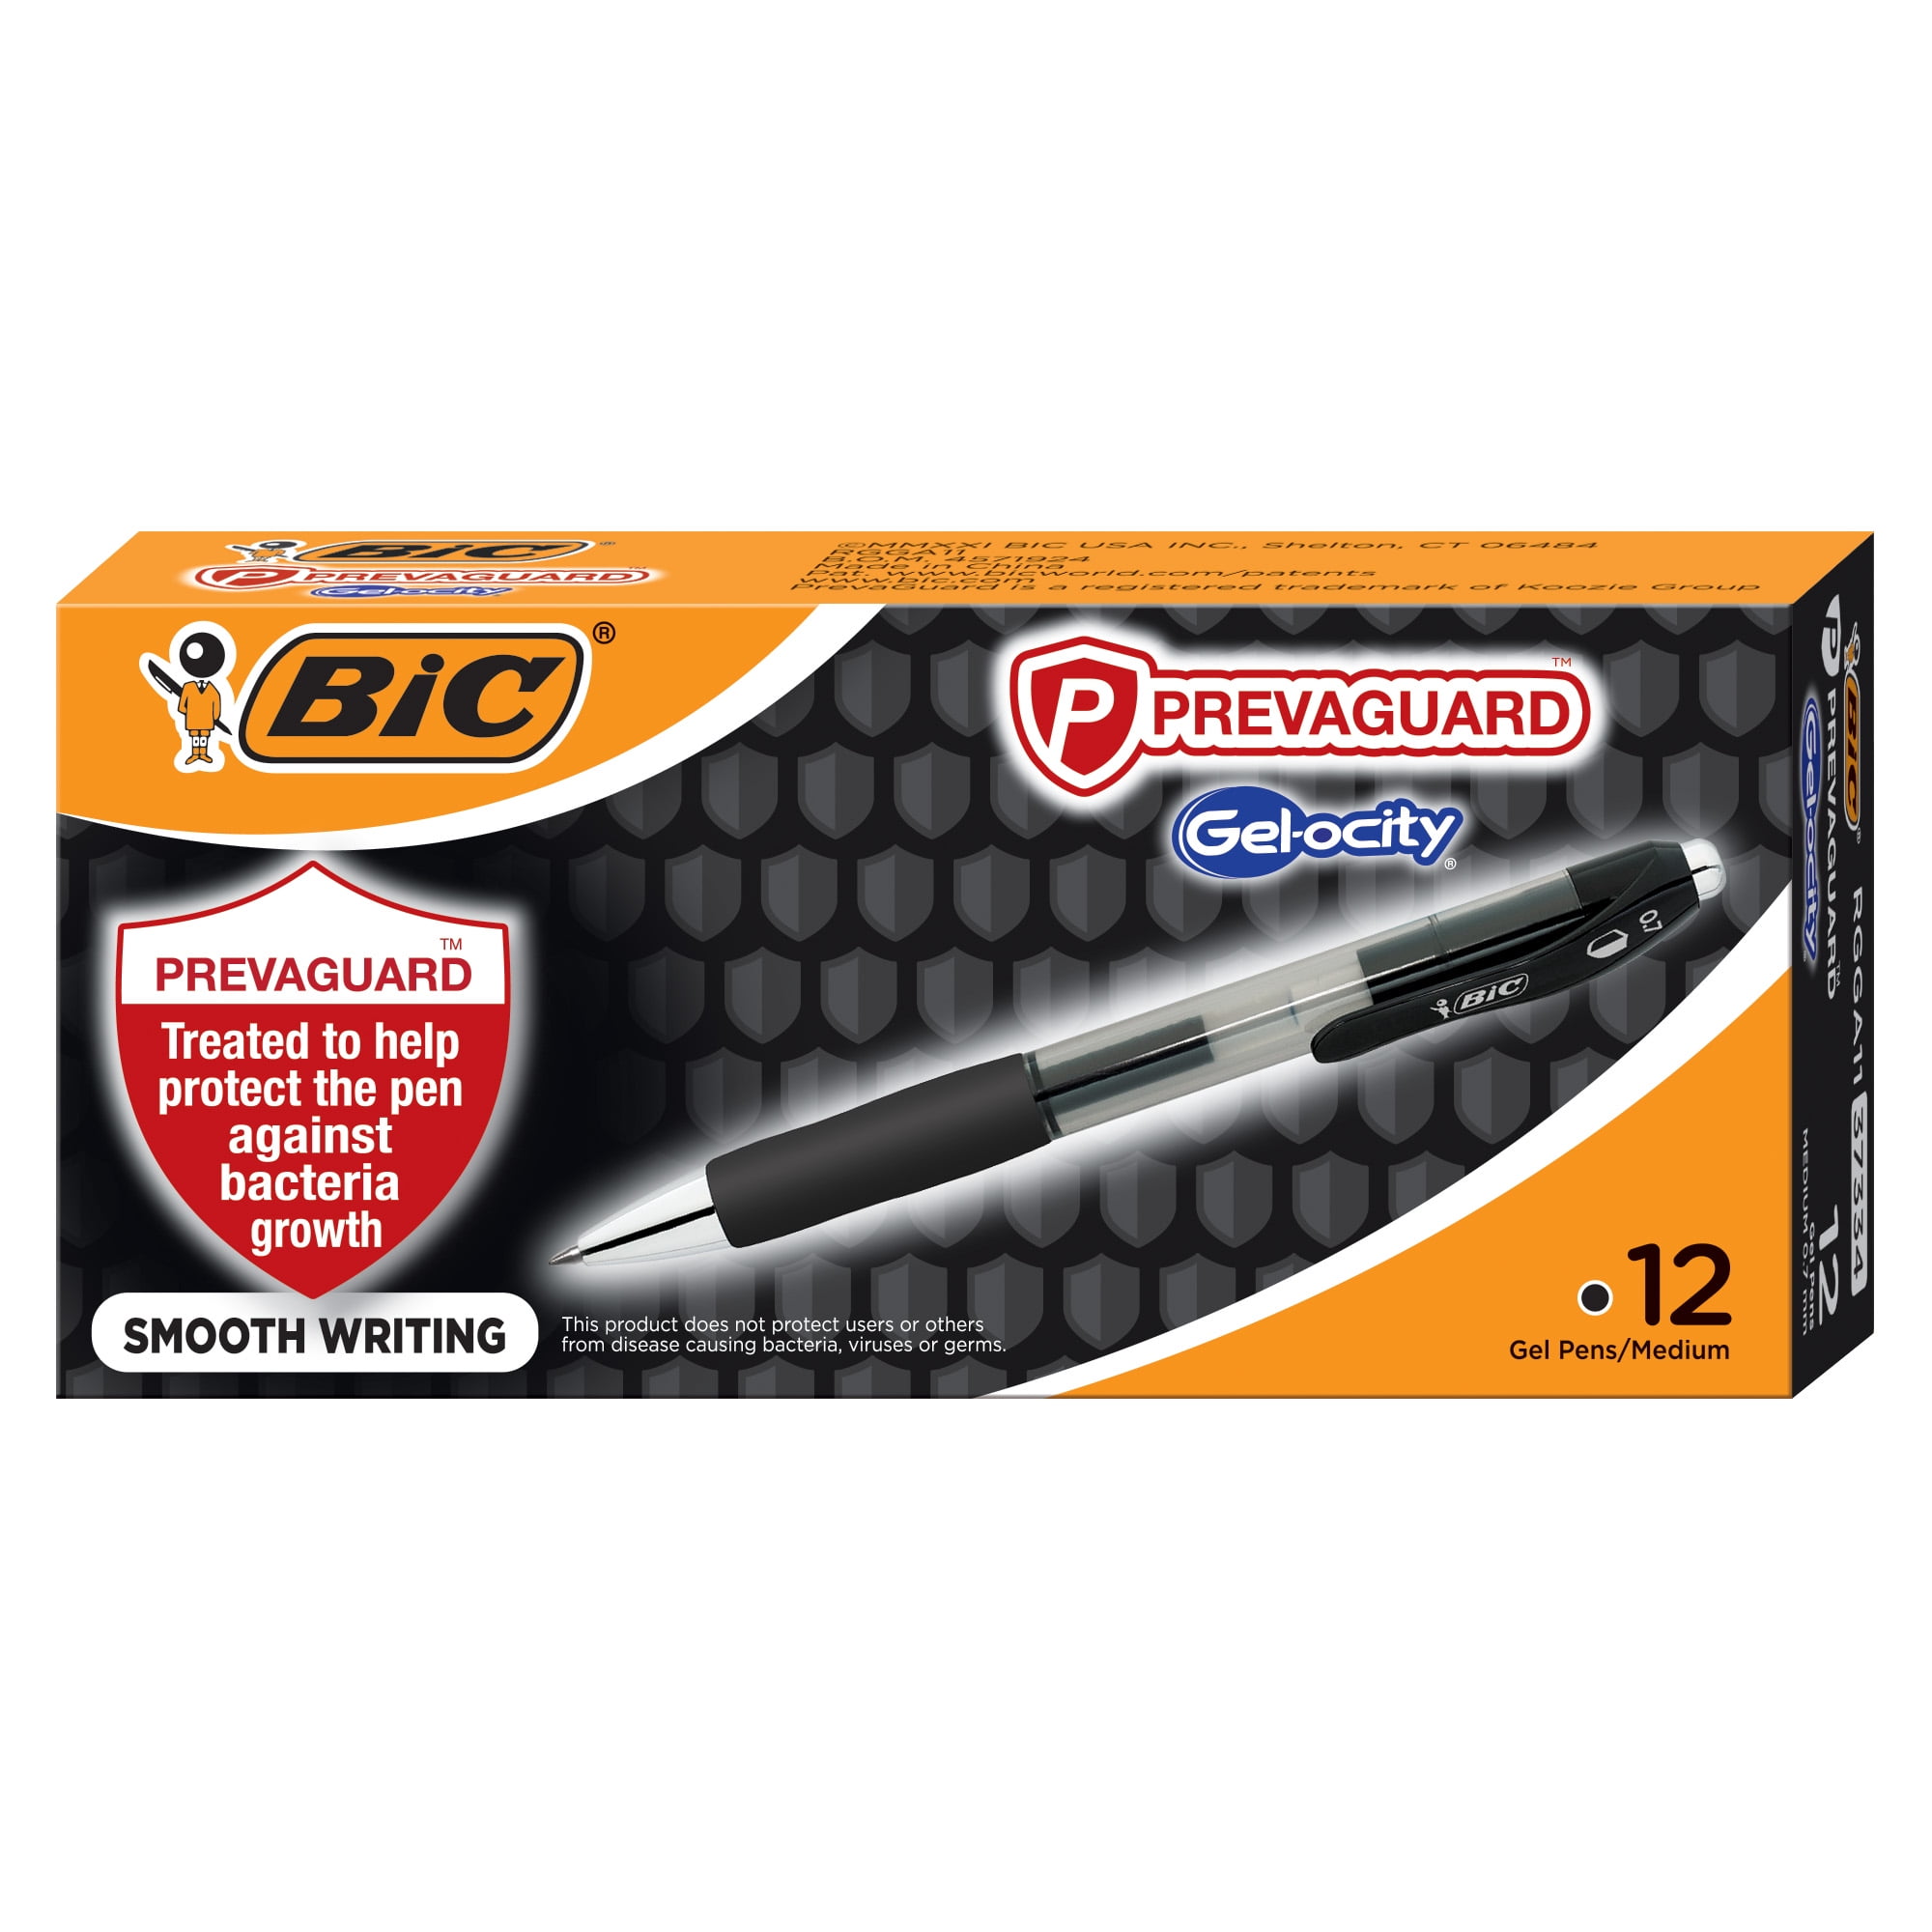 12 Packs: 2 ct. (24 total) Sharpie® S-Gel™ Black Pens